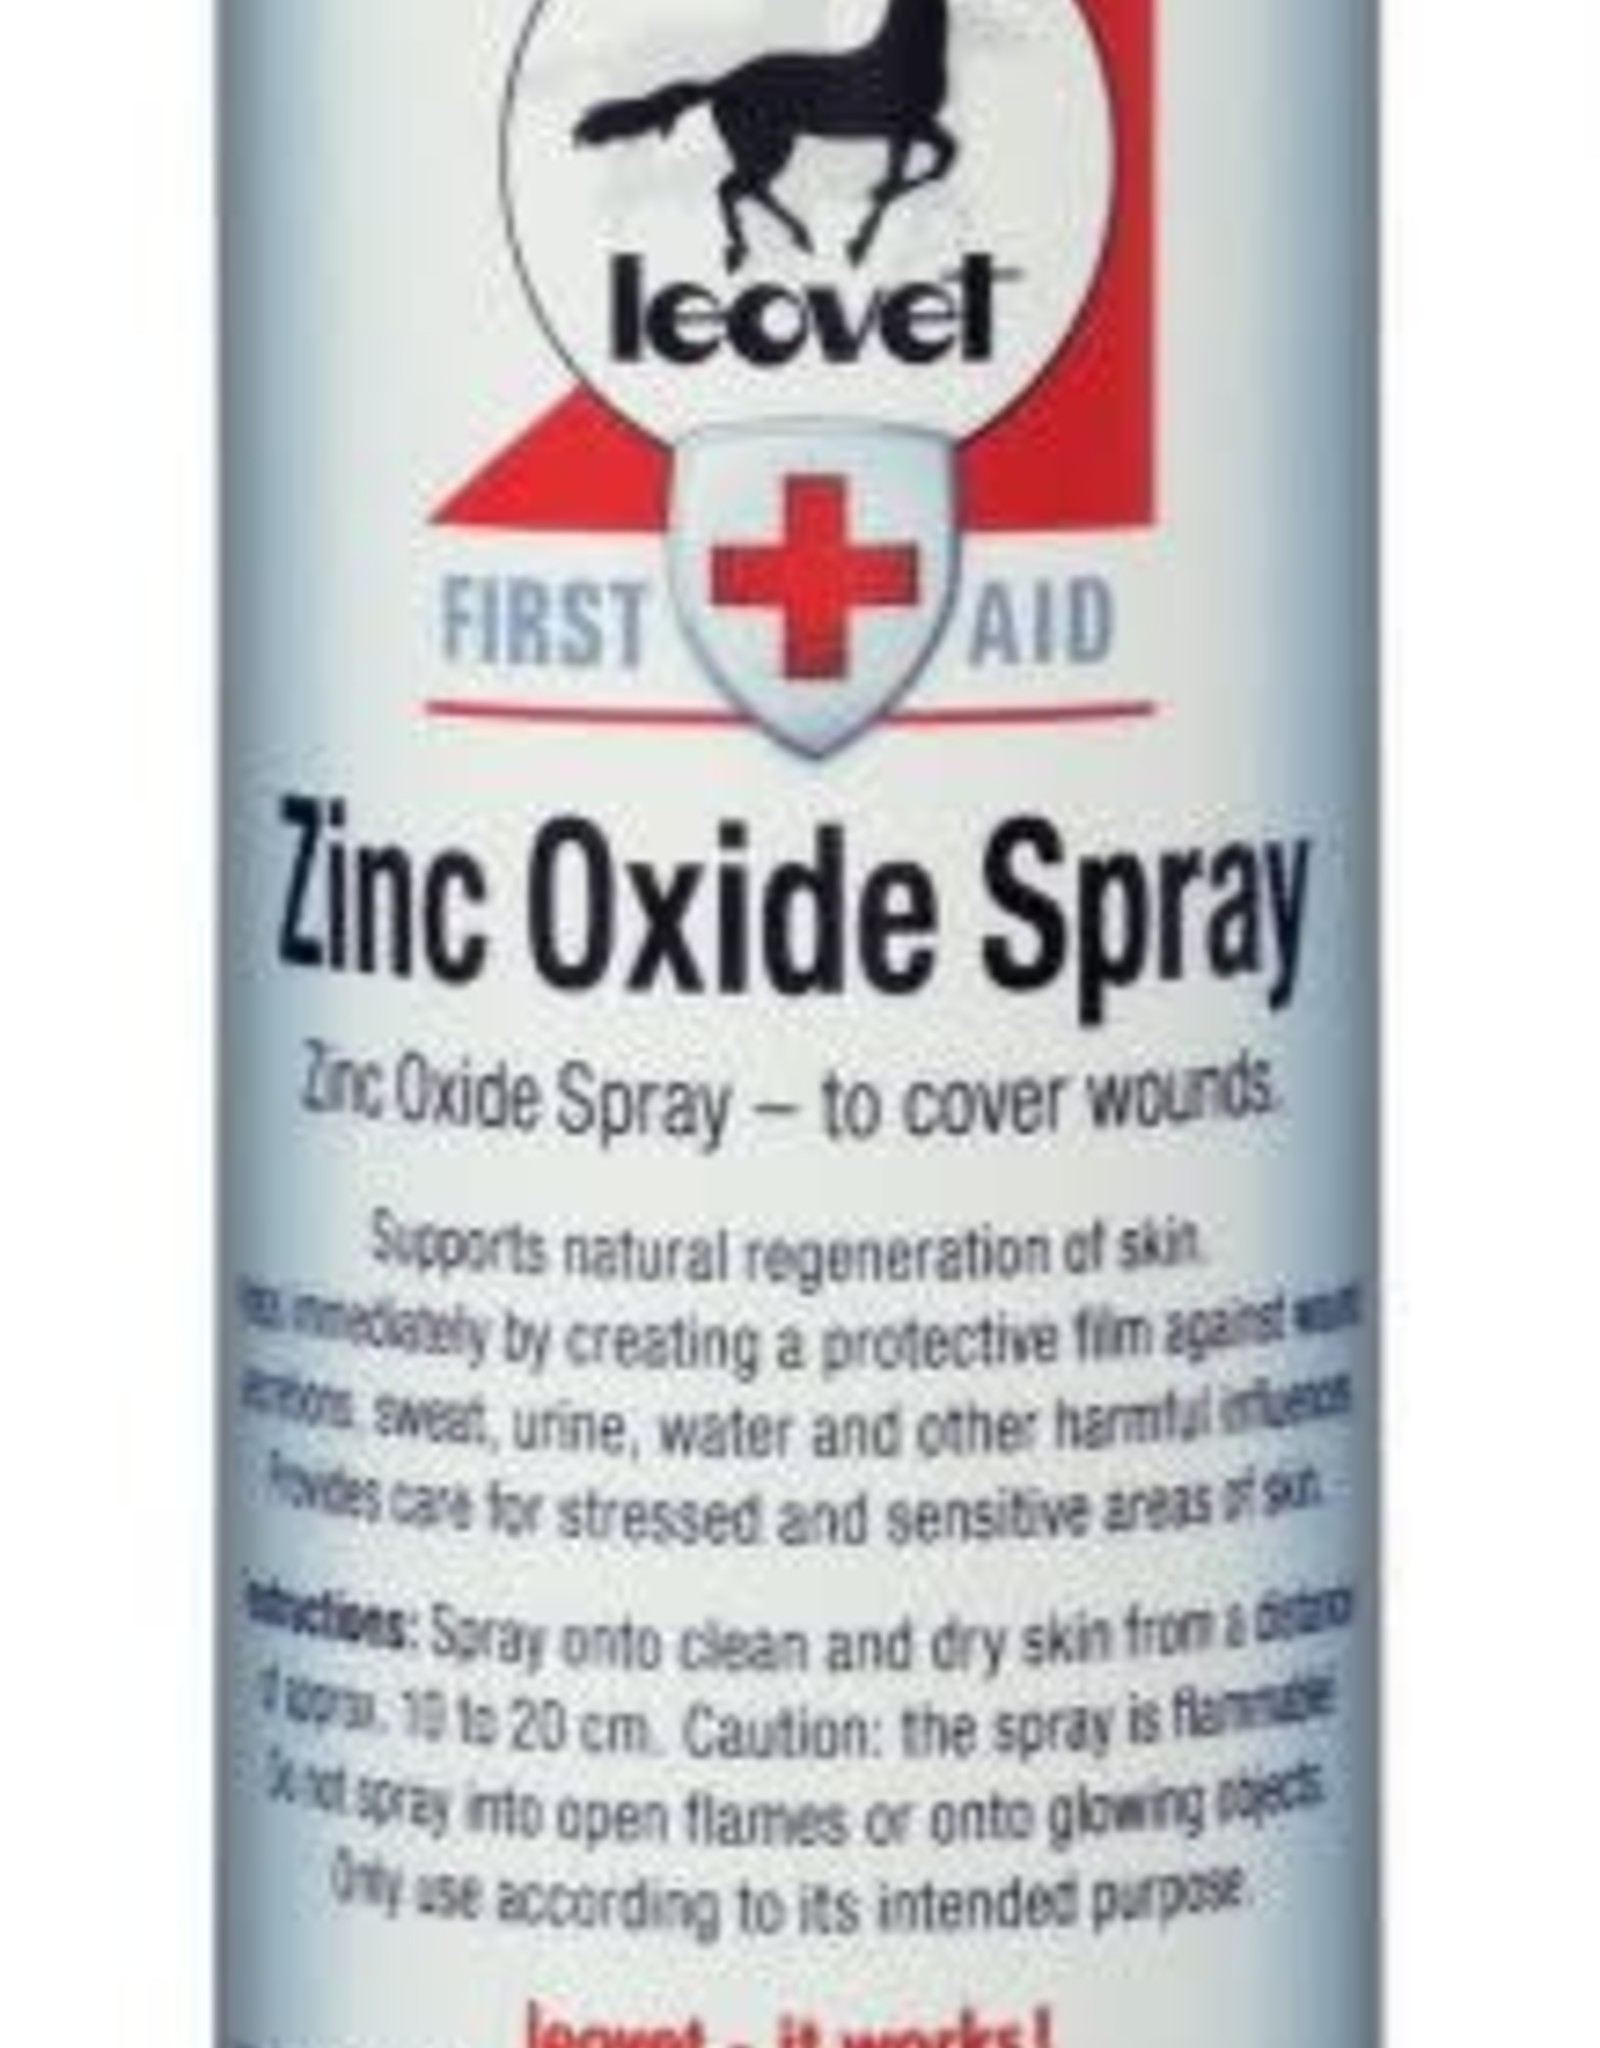 Comprar Spray Desinfectante Leovet ahora